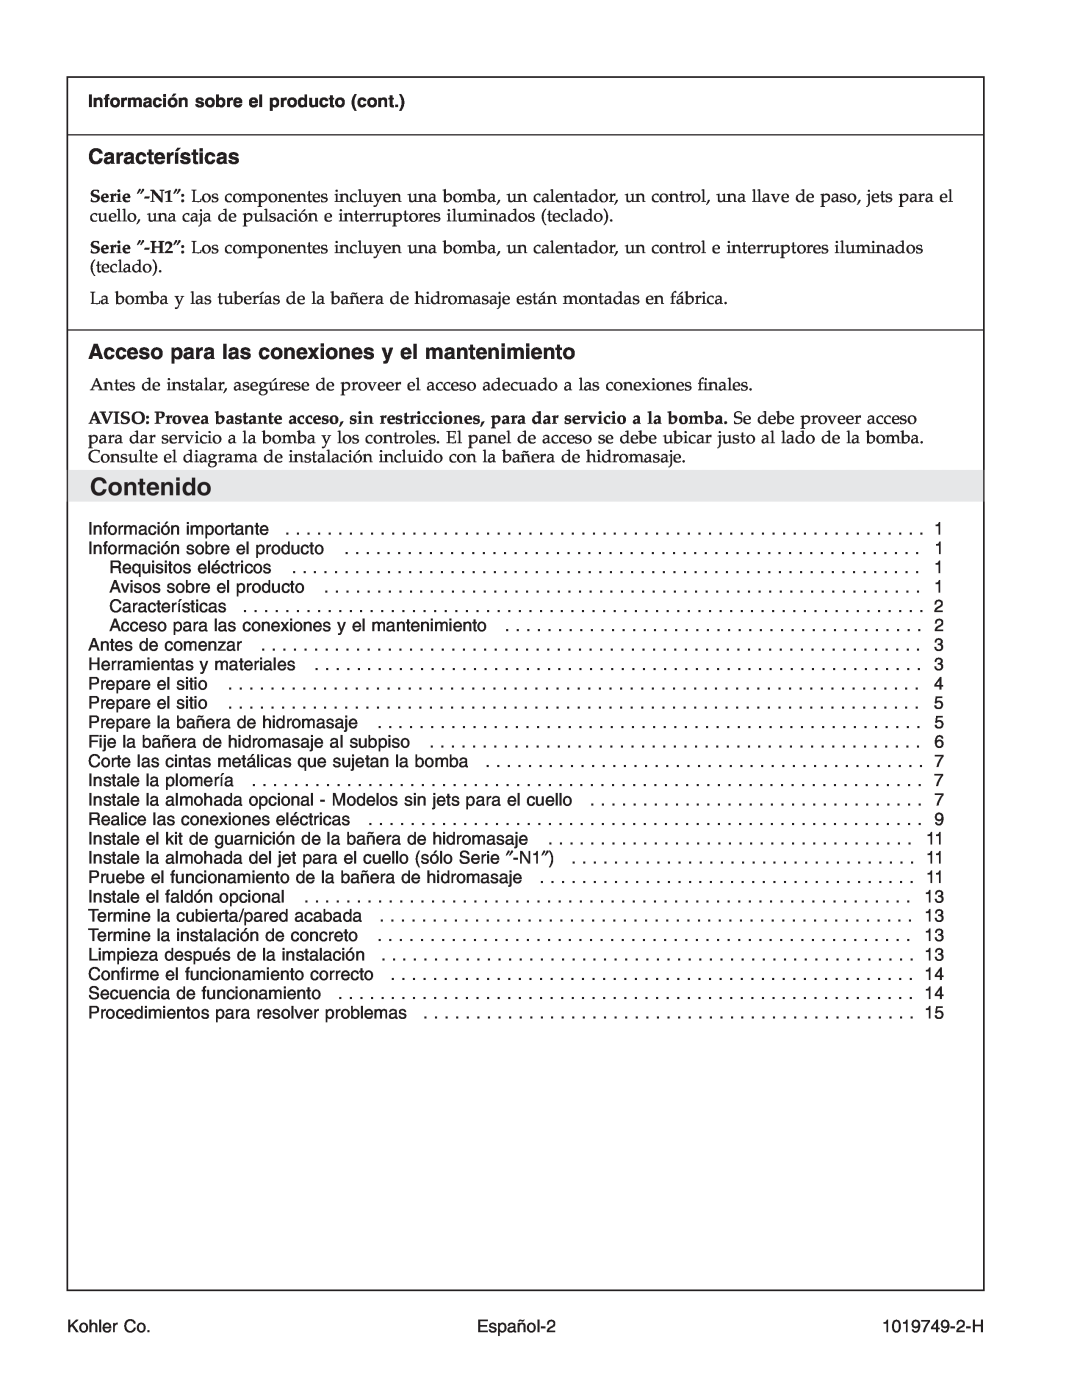 Kohler K-1487, K-1375, K-1461, K-1433, K-1460 manual Contenido, Características, Acceso para las conexiones y el mantenimiento 